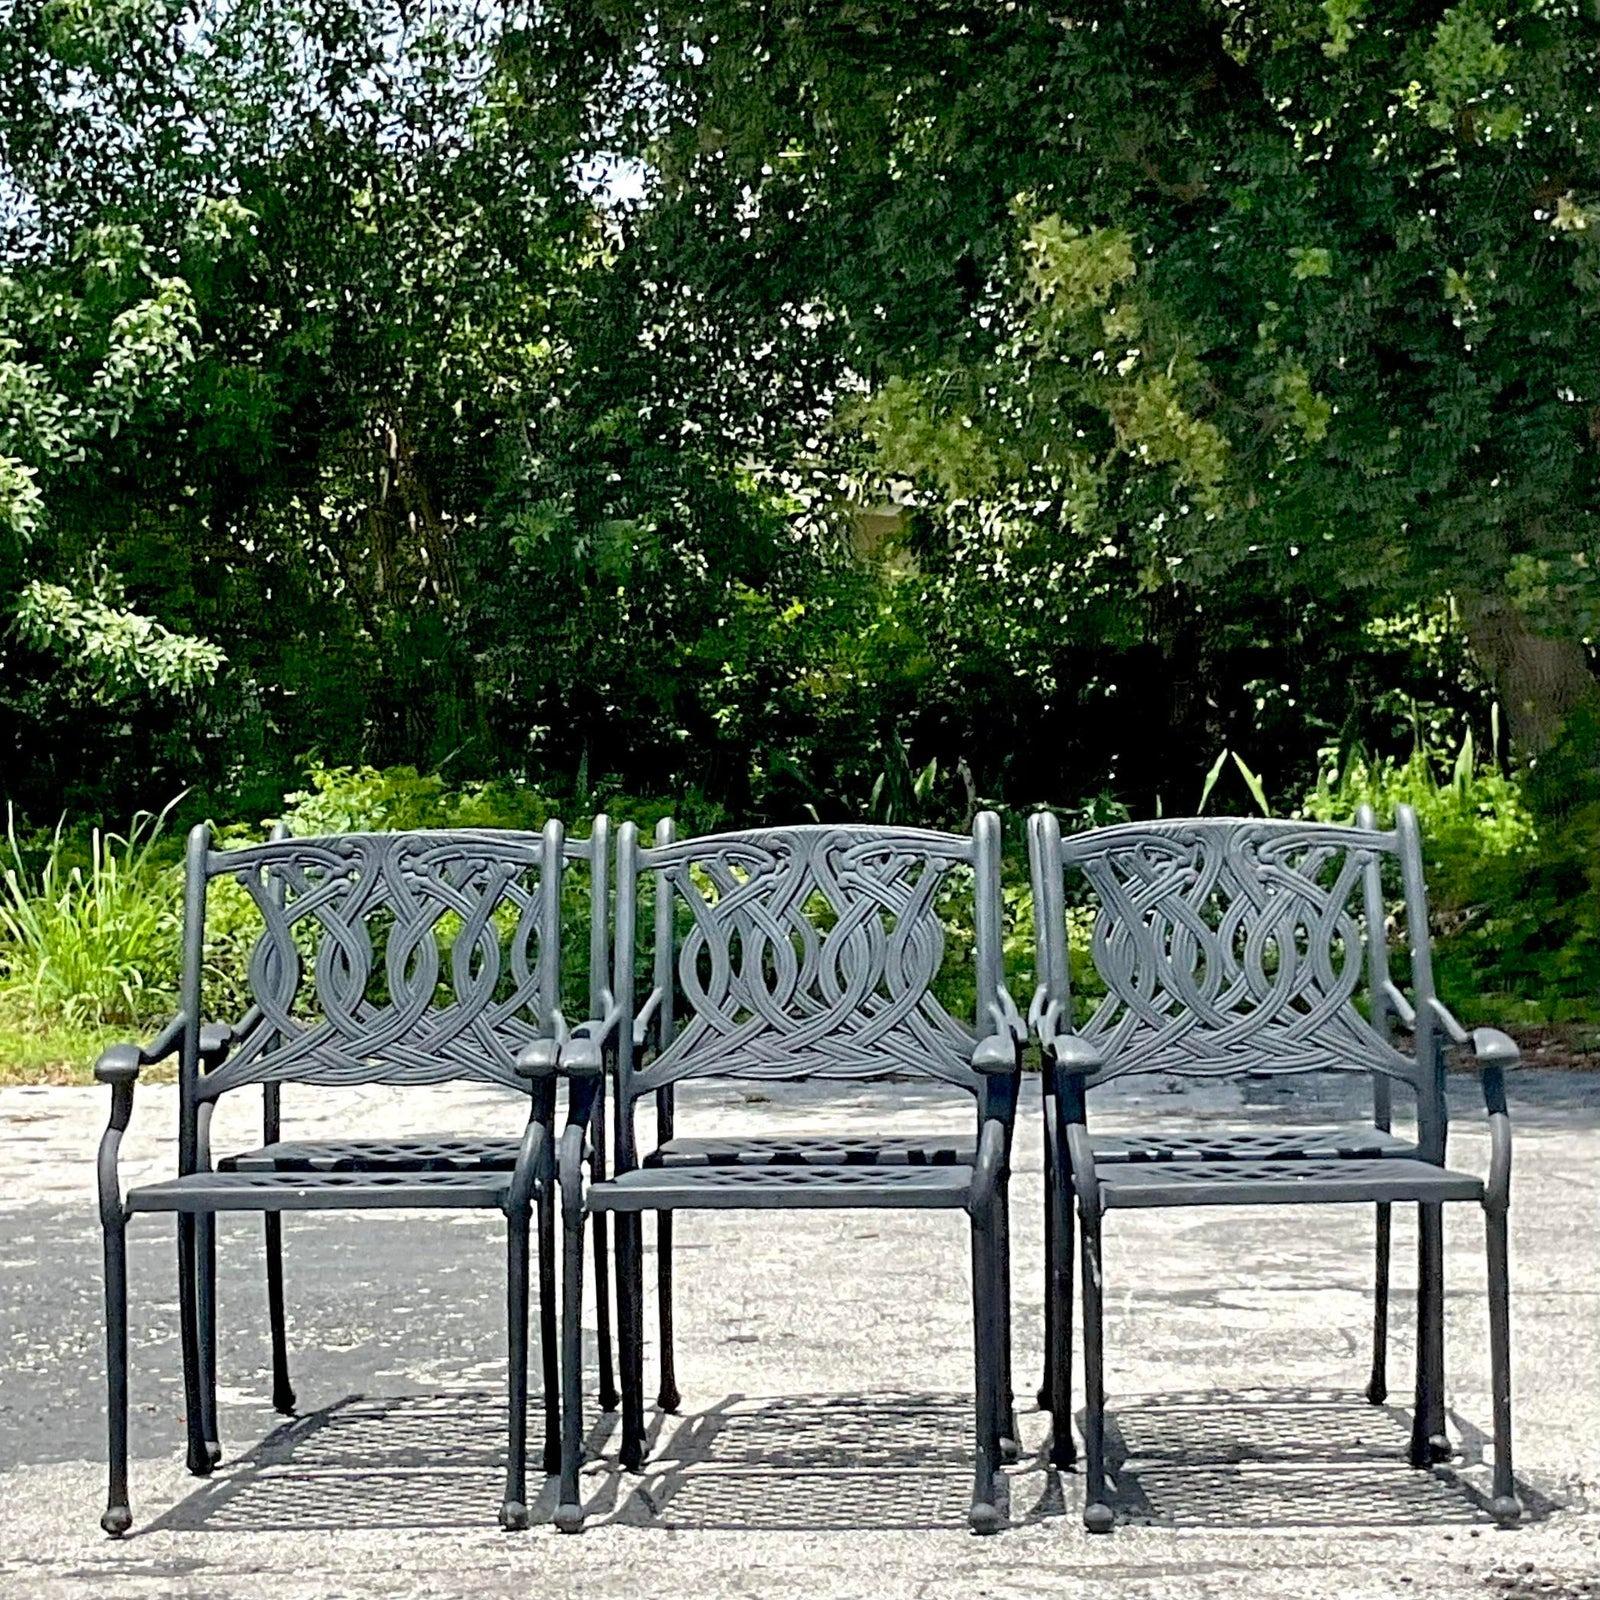 Un fabuleux ensemble de 6 chaises de salle à manger d'extérieur en fonte d'aluminium. Un design chic en forme de volute dans une finition noire mate. Parfait tel quel ou facilement peint pour s'adapter à votre projet. Des chaises supplémentaires